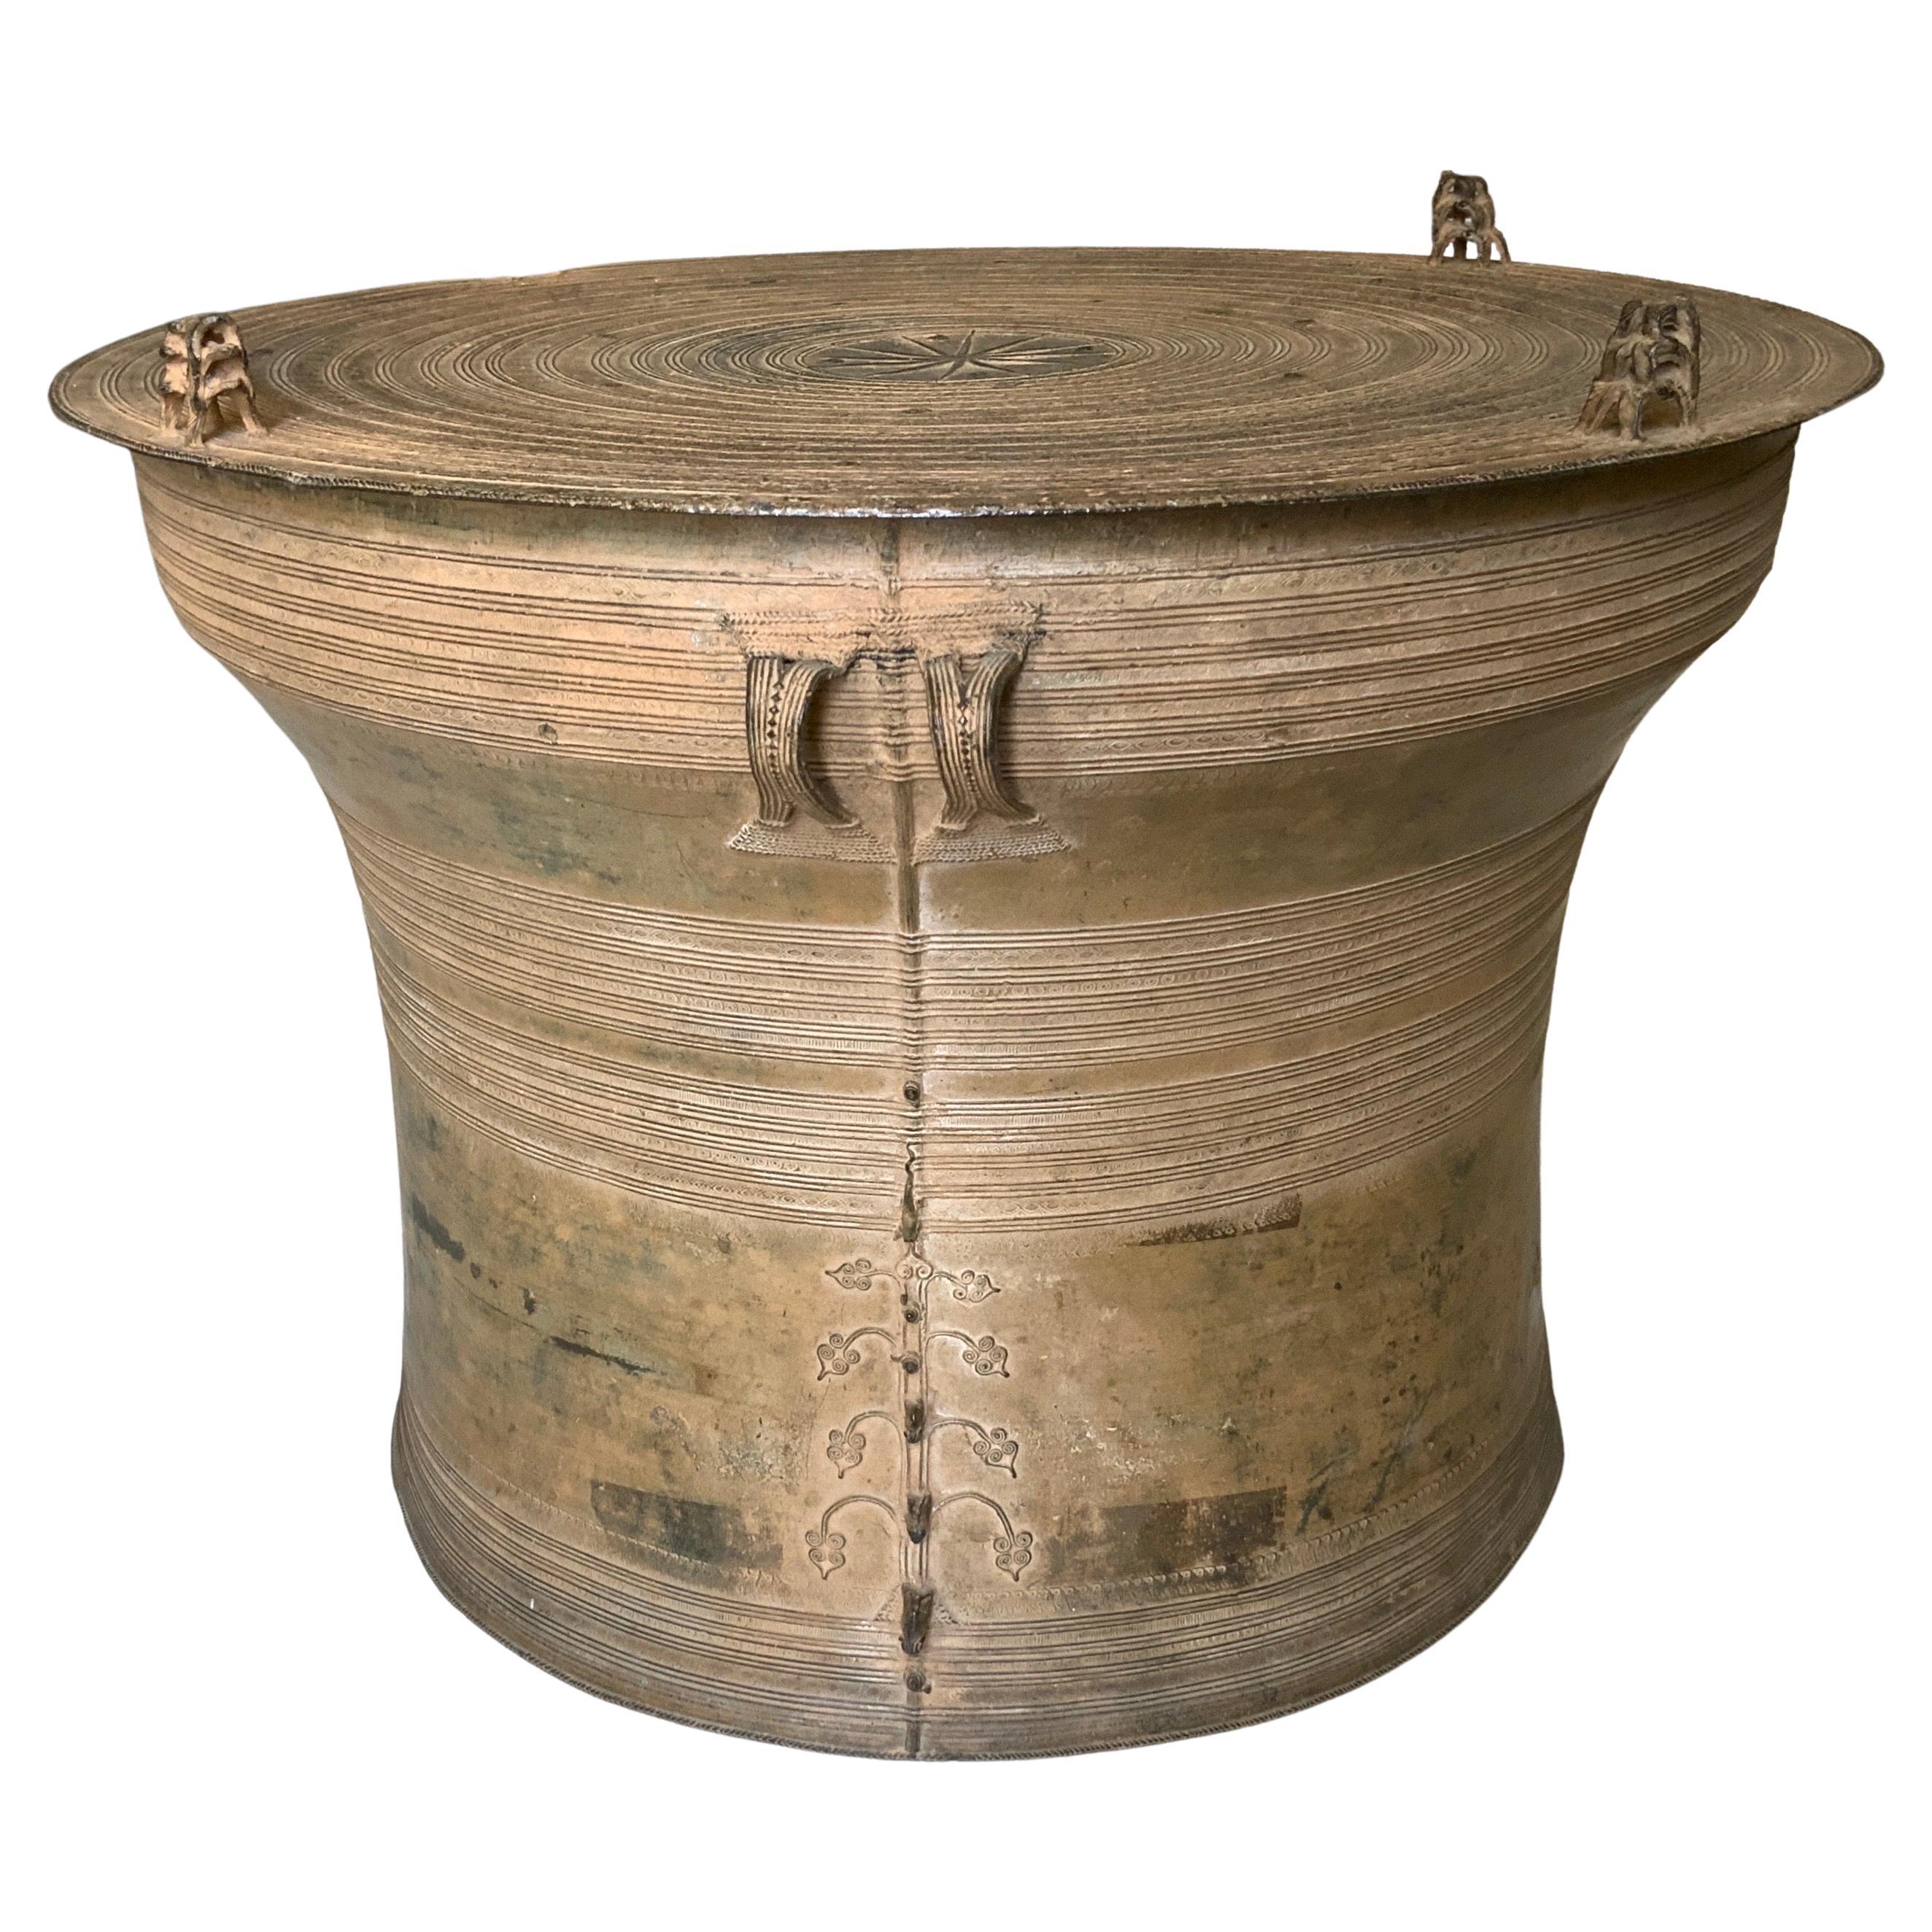 Très beau et grand tambour de pluie en bronze patiné d'origine de l'Asie du Sud-Est. 
Les tambours de pluie étaient utilisés dans les rituels de l'Asie du Sud-Est. Leur forme creuse en bronze transforme le son des pluies de mousson en musique. Ce